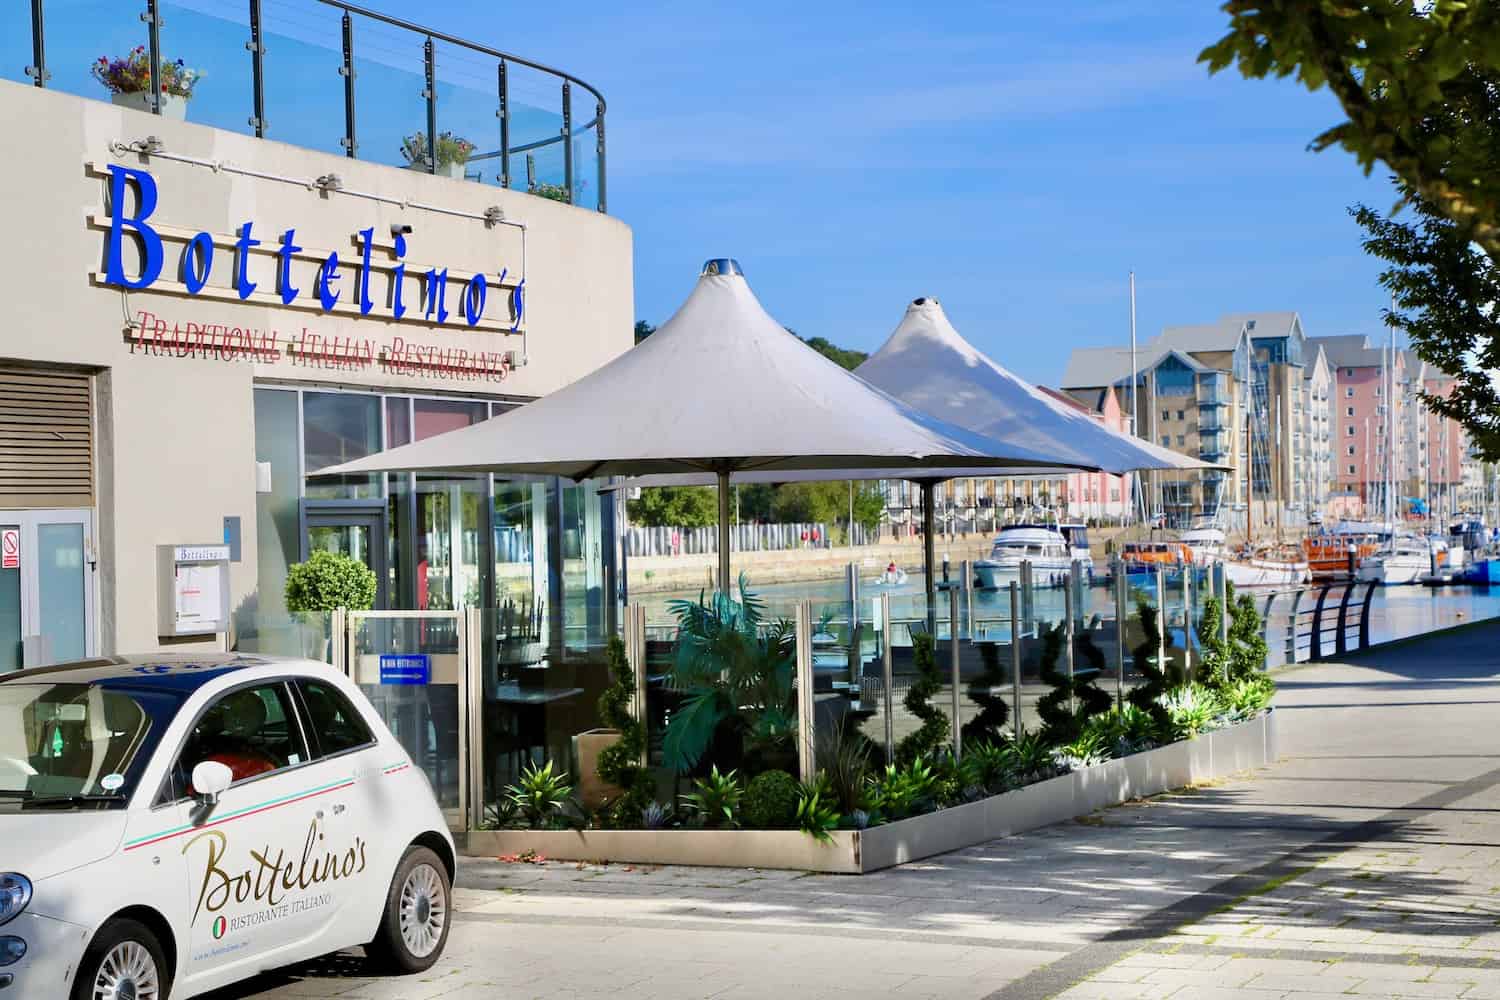 Bottelino's Italian Restaurant overlooking Portishead Marina